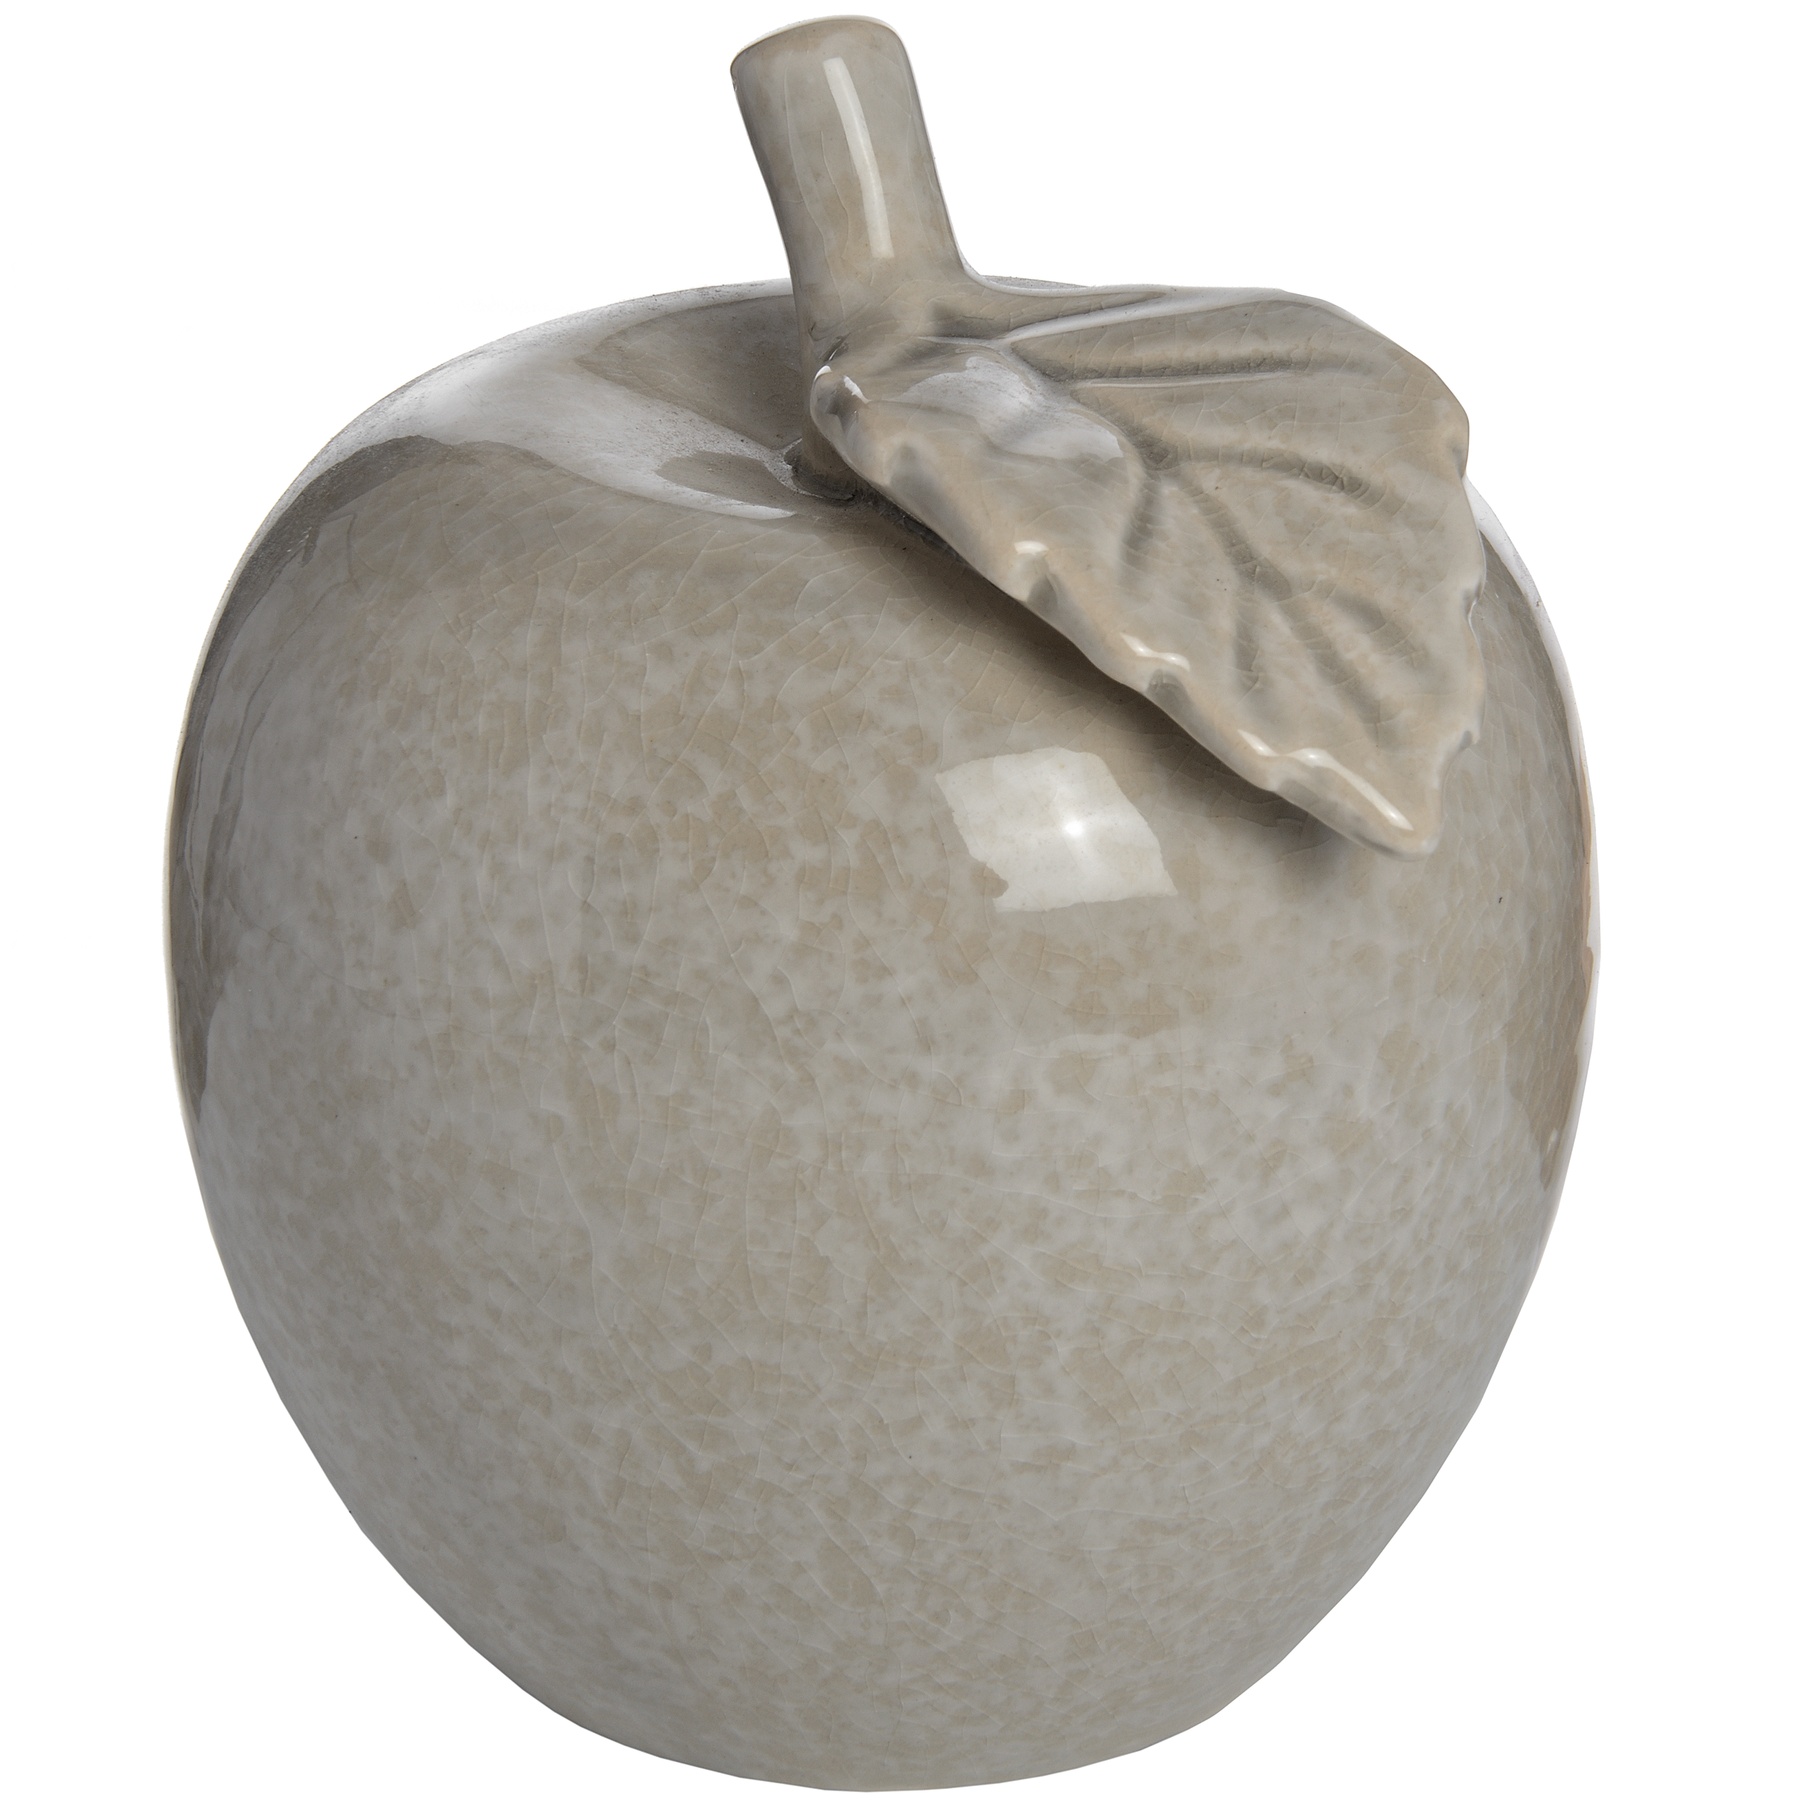 Antique Grey Small Ceramic Apple - Image 1